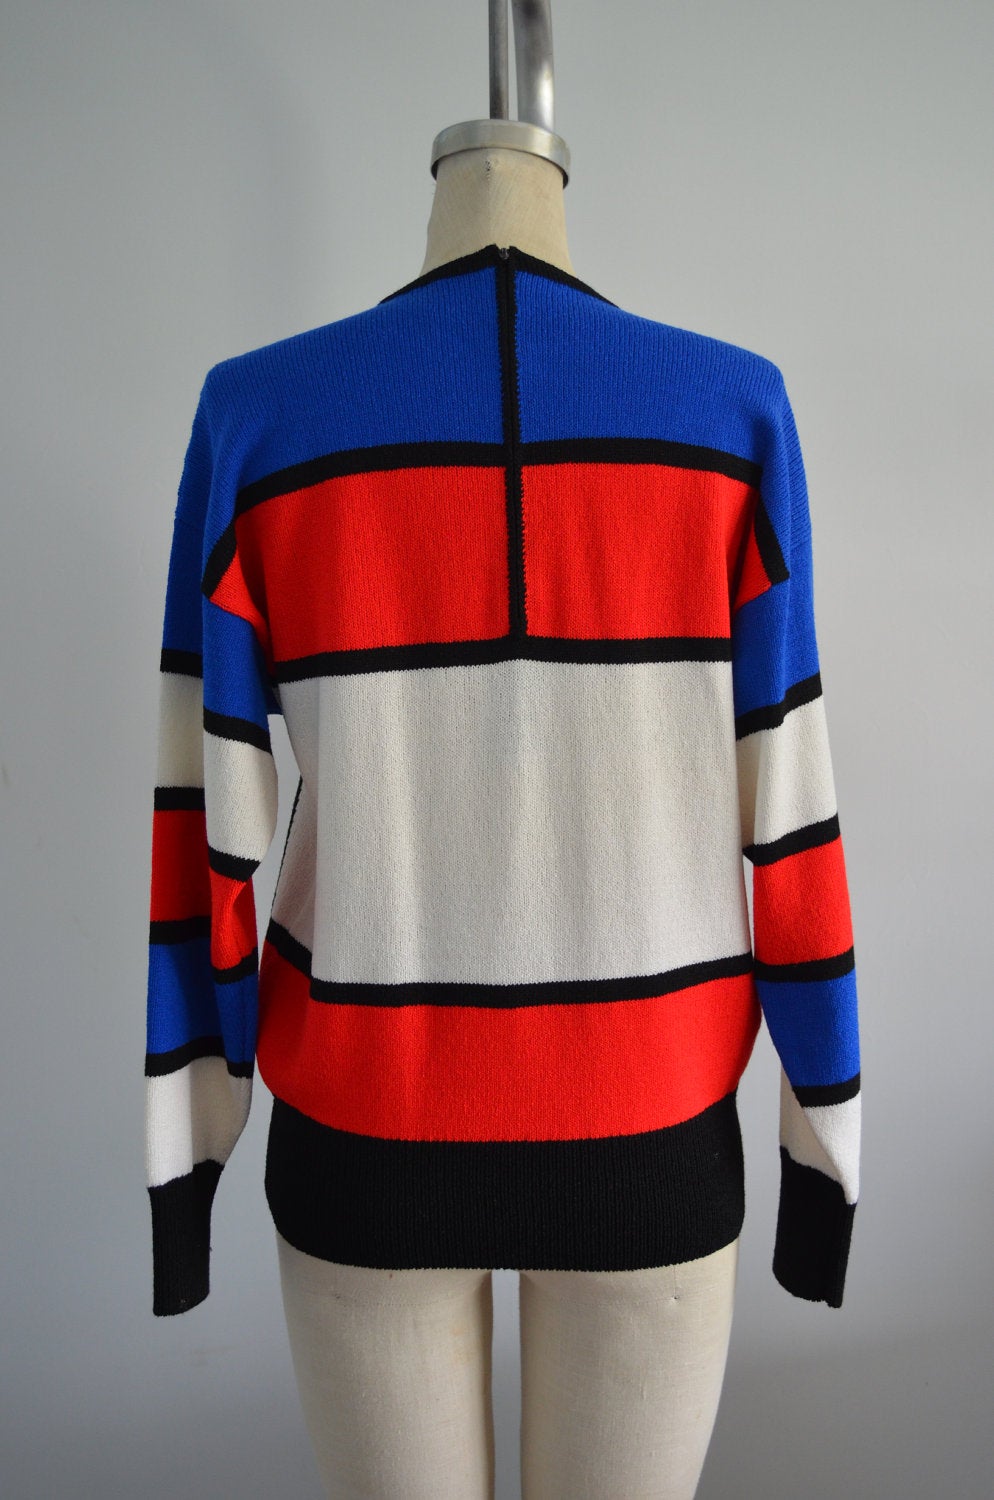 Piet Mondrian Inspired Geometric Knitted Rust Sweater